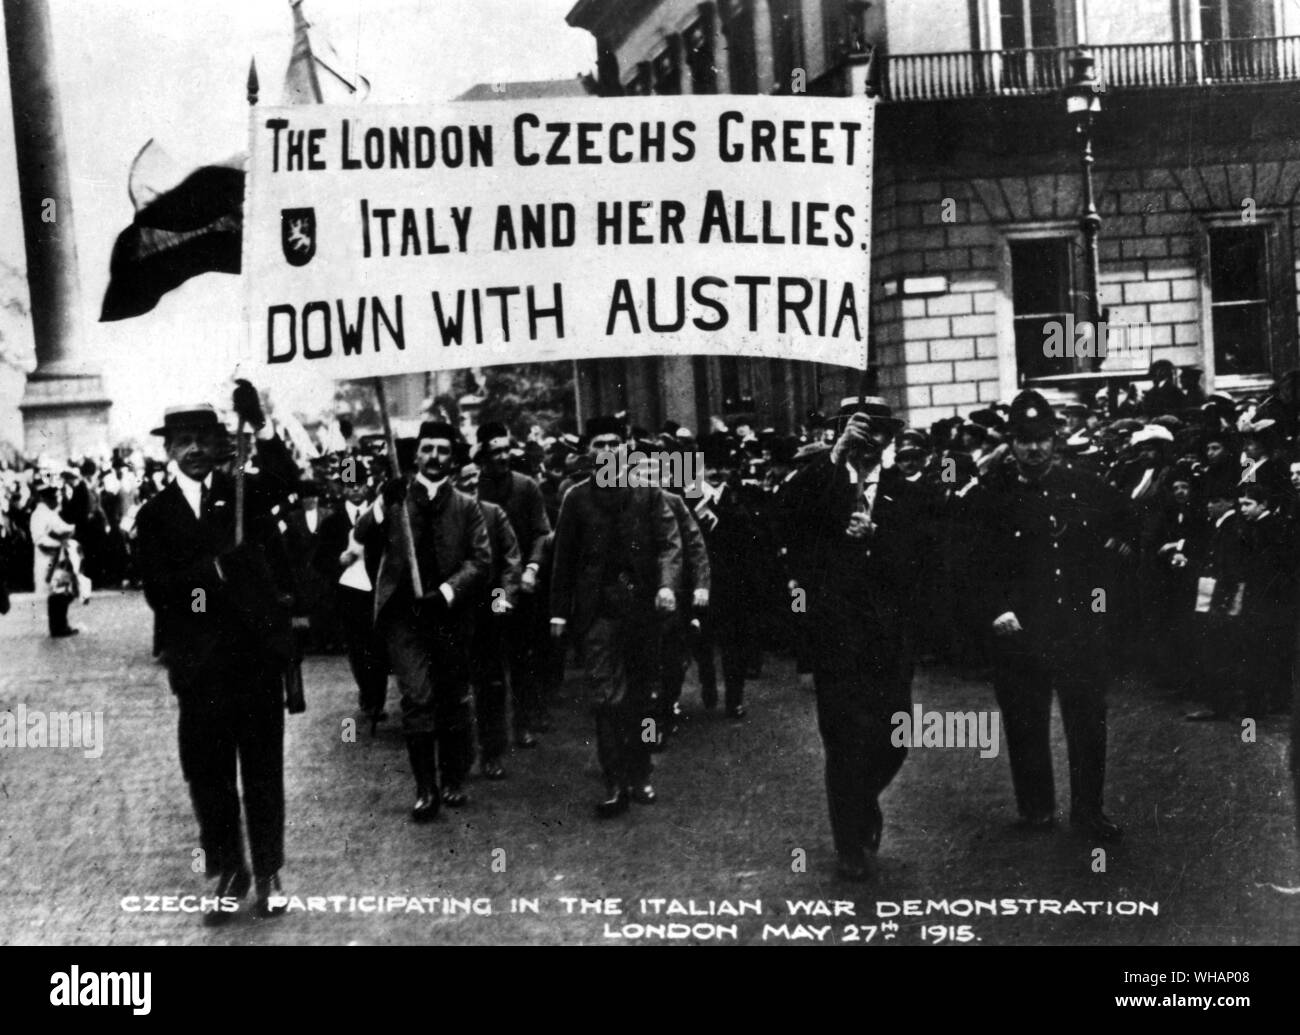 Eine Szene während eines österreichischen Demonstration der Tschechen mit Wohnsitz in London am 27. Mai 1915 getroffen. . Die Londoner Tschechen grüße Italien und ihre Verbündeten sich mit Österreich. Tschechen die Teilnahme an der Italienischen Krieg Demonstration Stockfoto